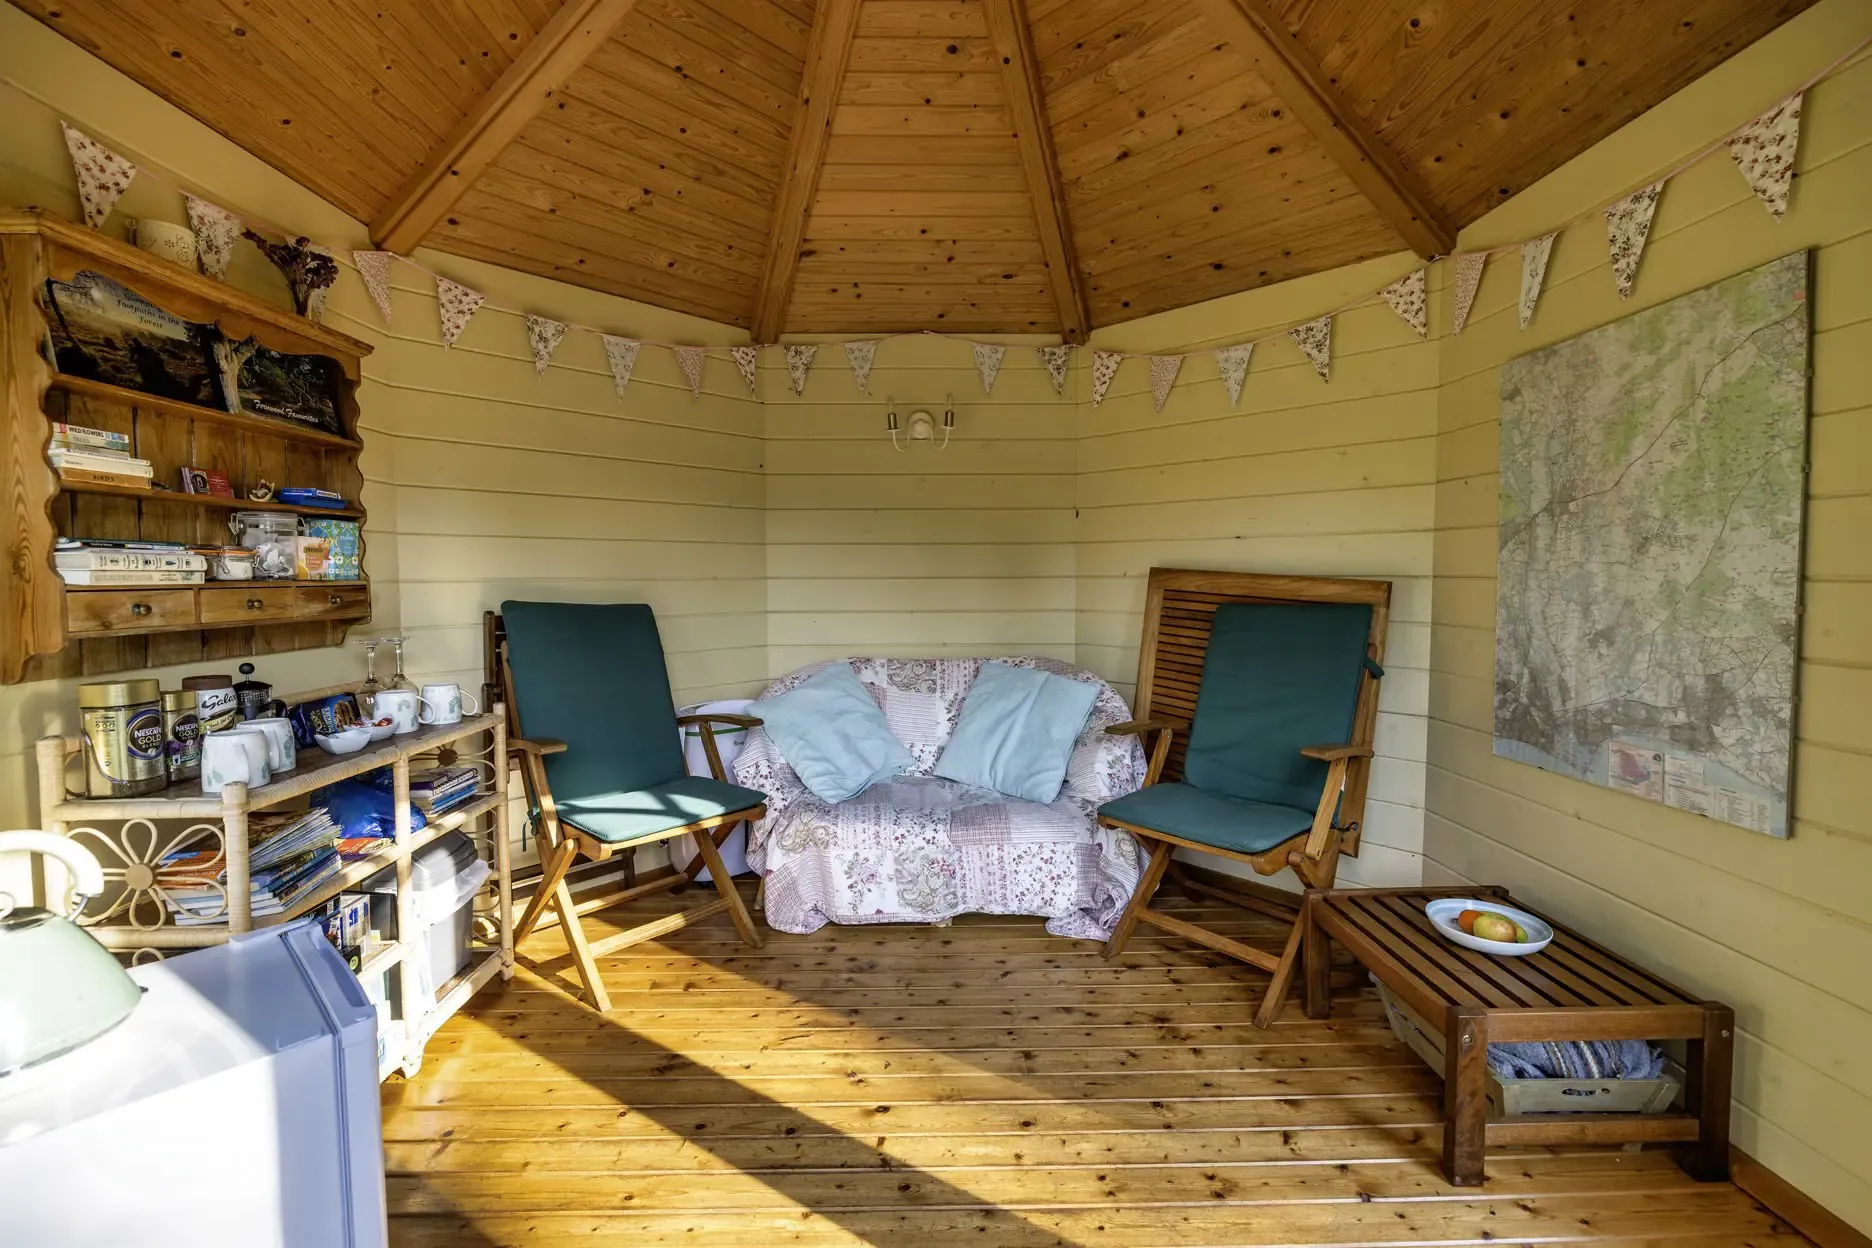 Gypsy caravan summer house interior